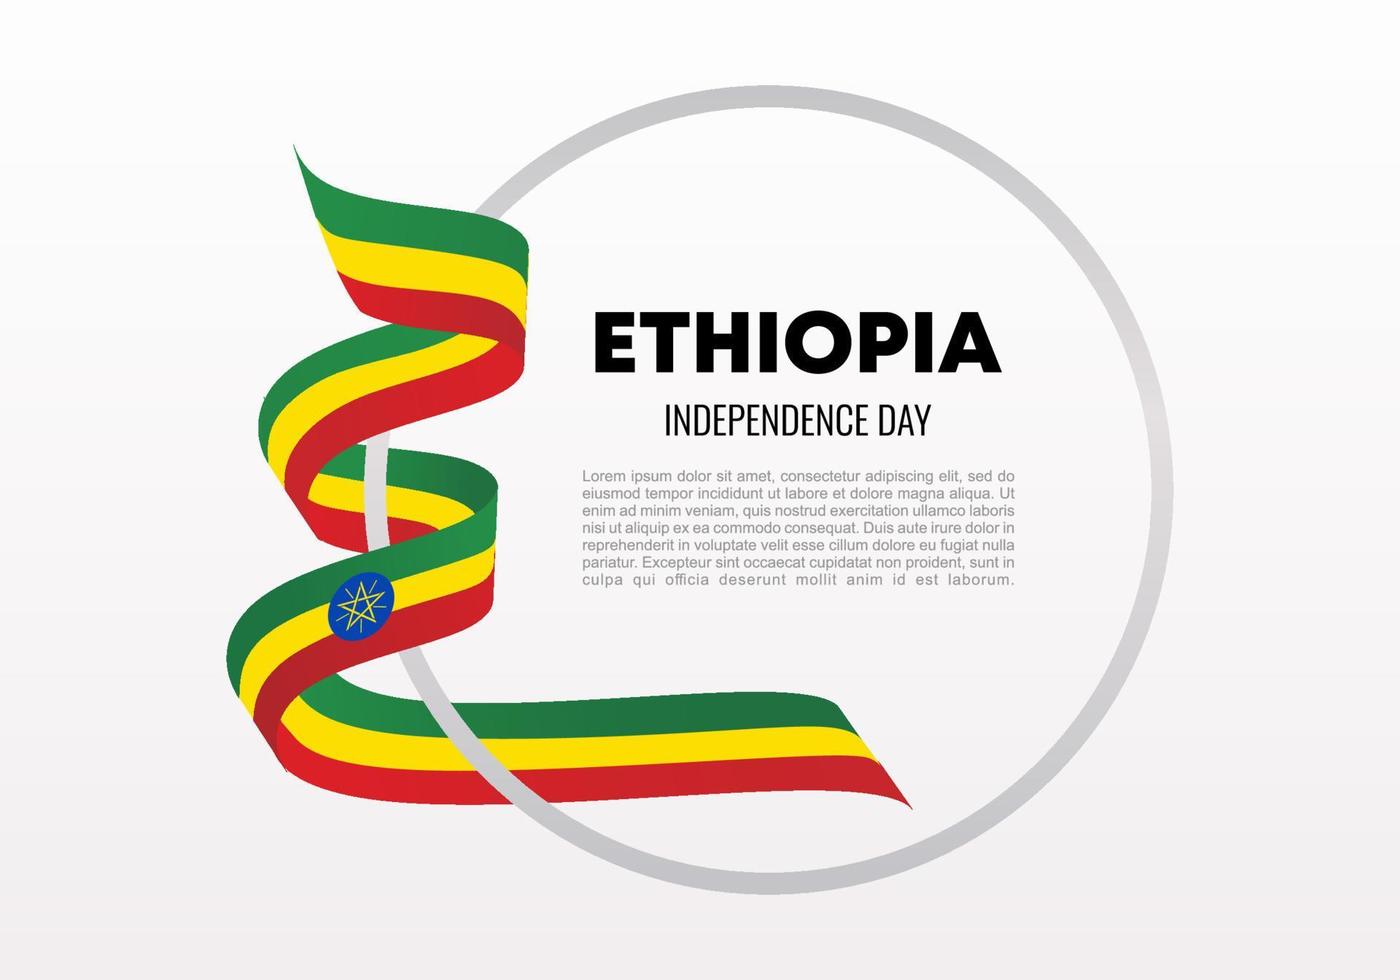 fond de la fête de l'indépendance de l'éthiopie pour la célébration nationale du 28 mai. vecteur